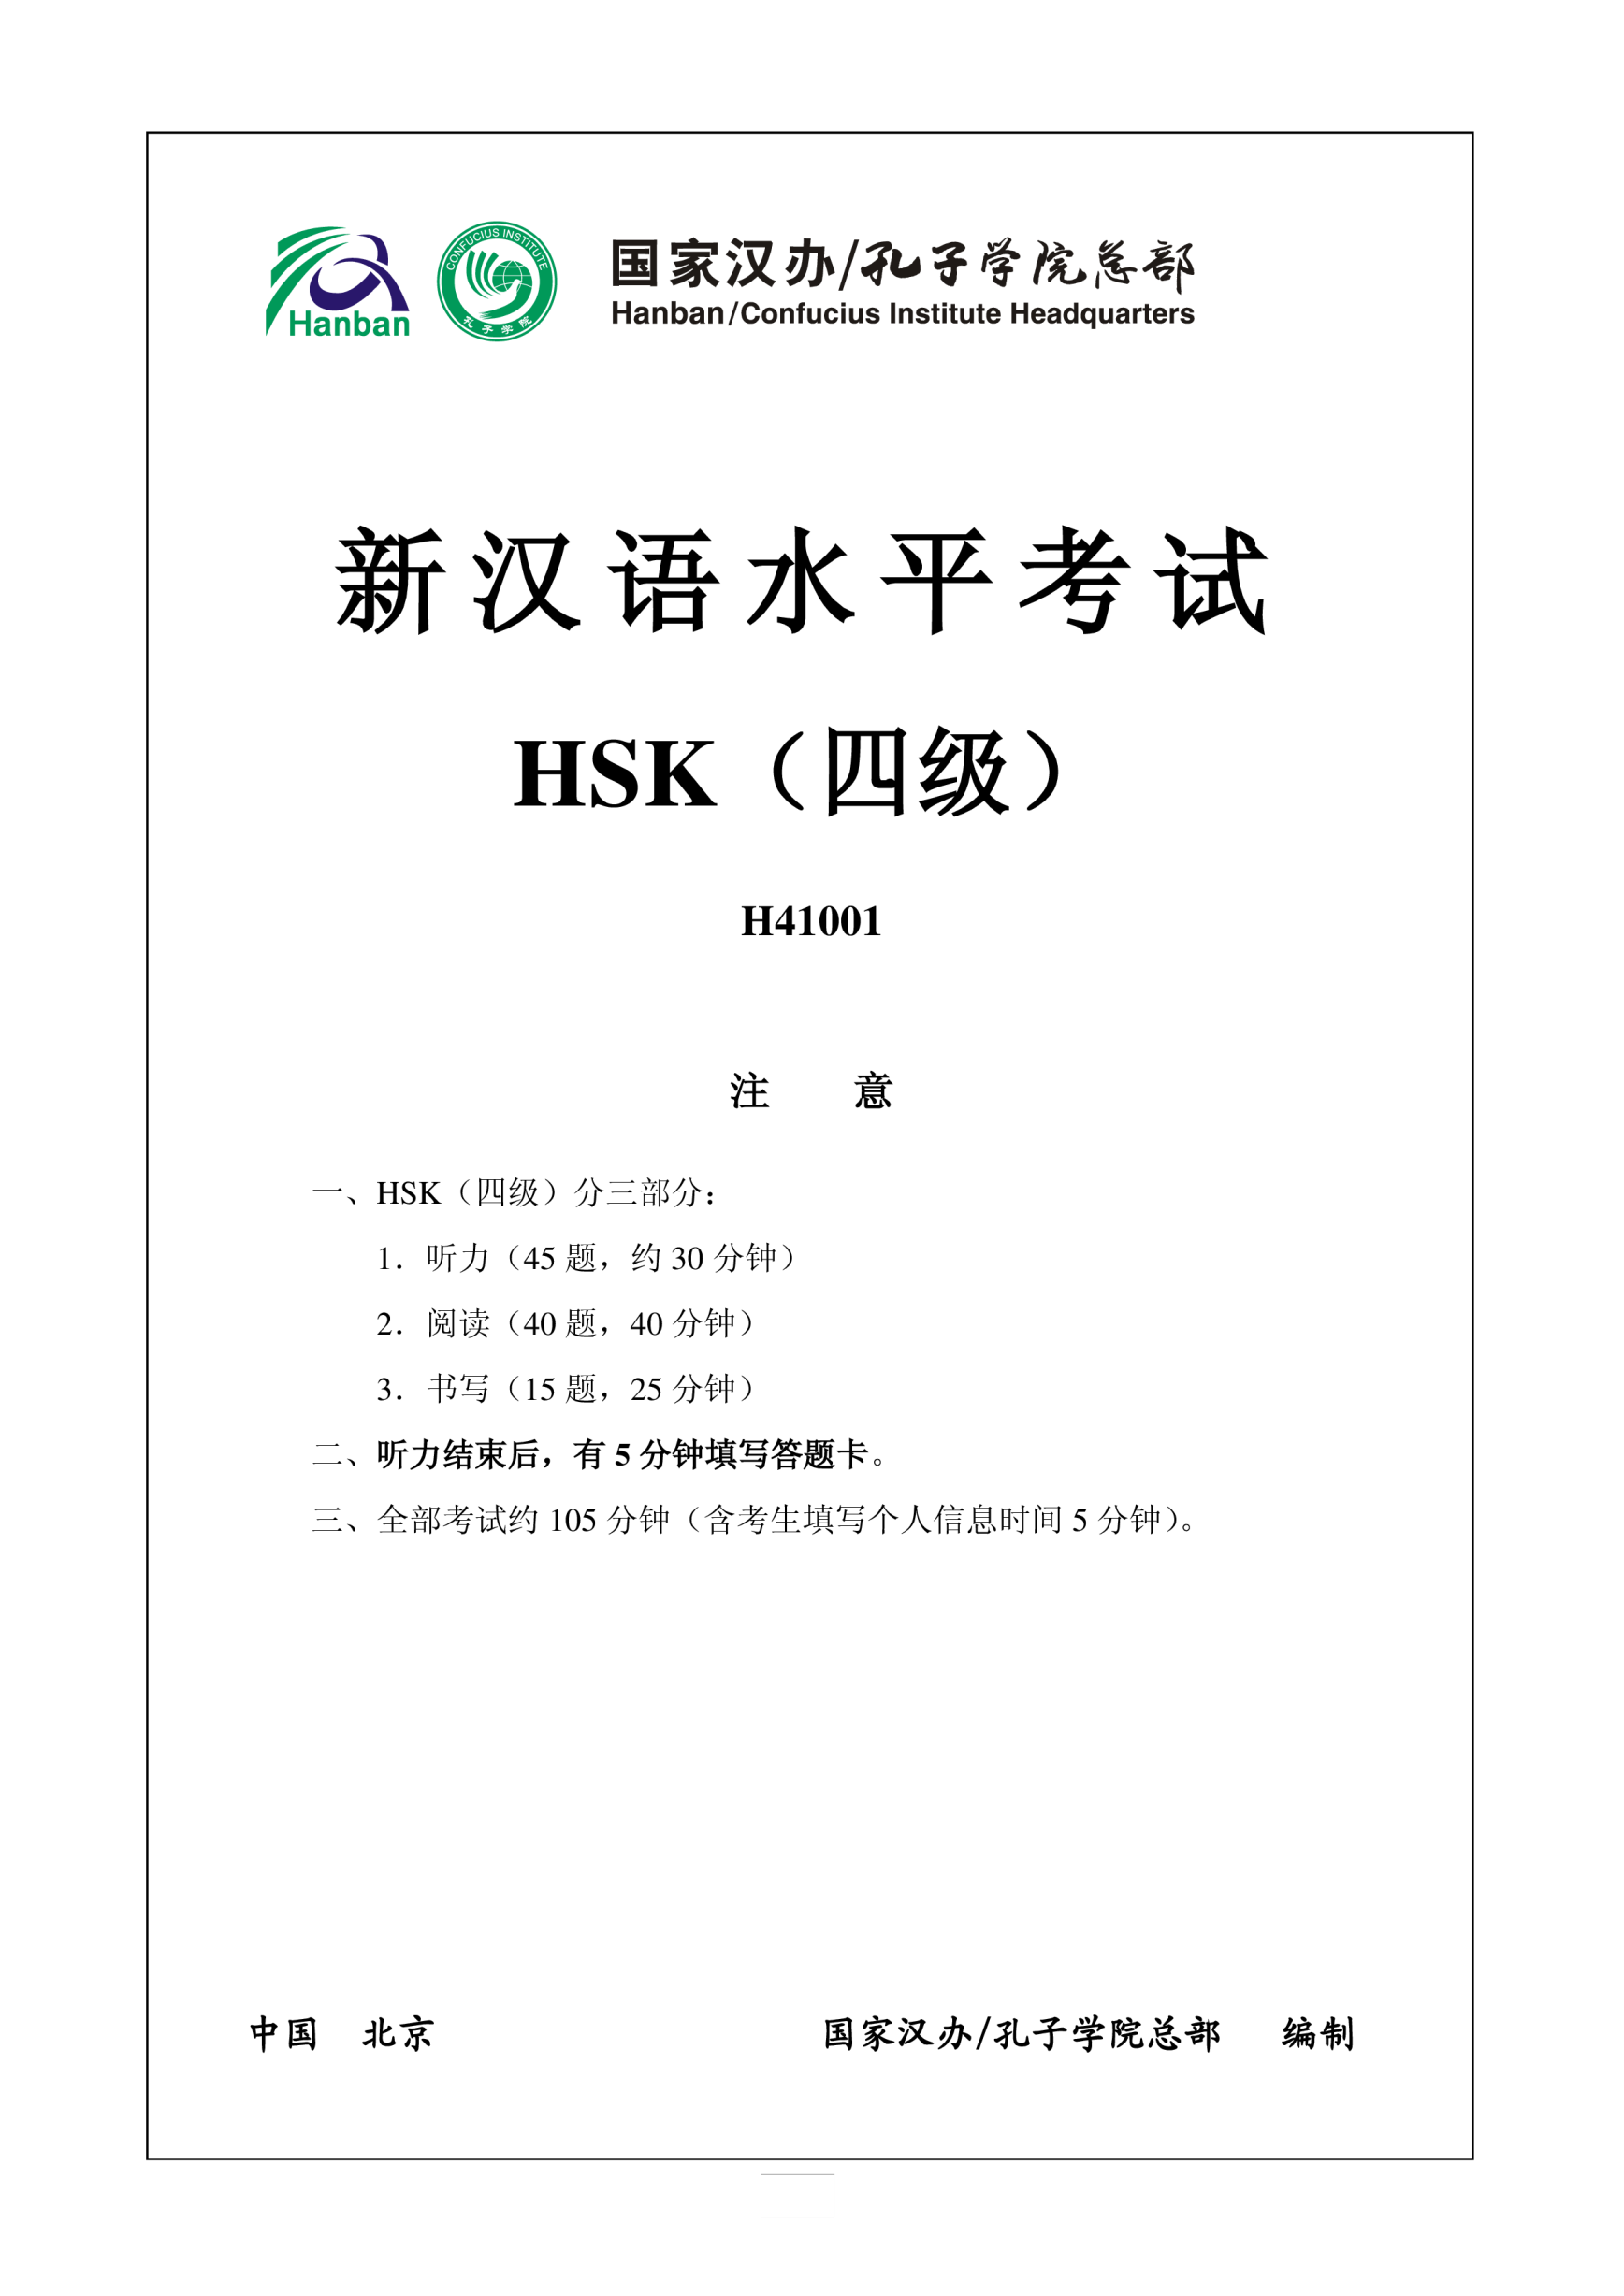 Vorschaubild der VorlageHSK4 Chinese Exam including Answers # HSK H41001